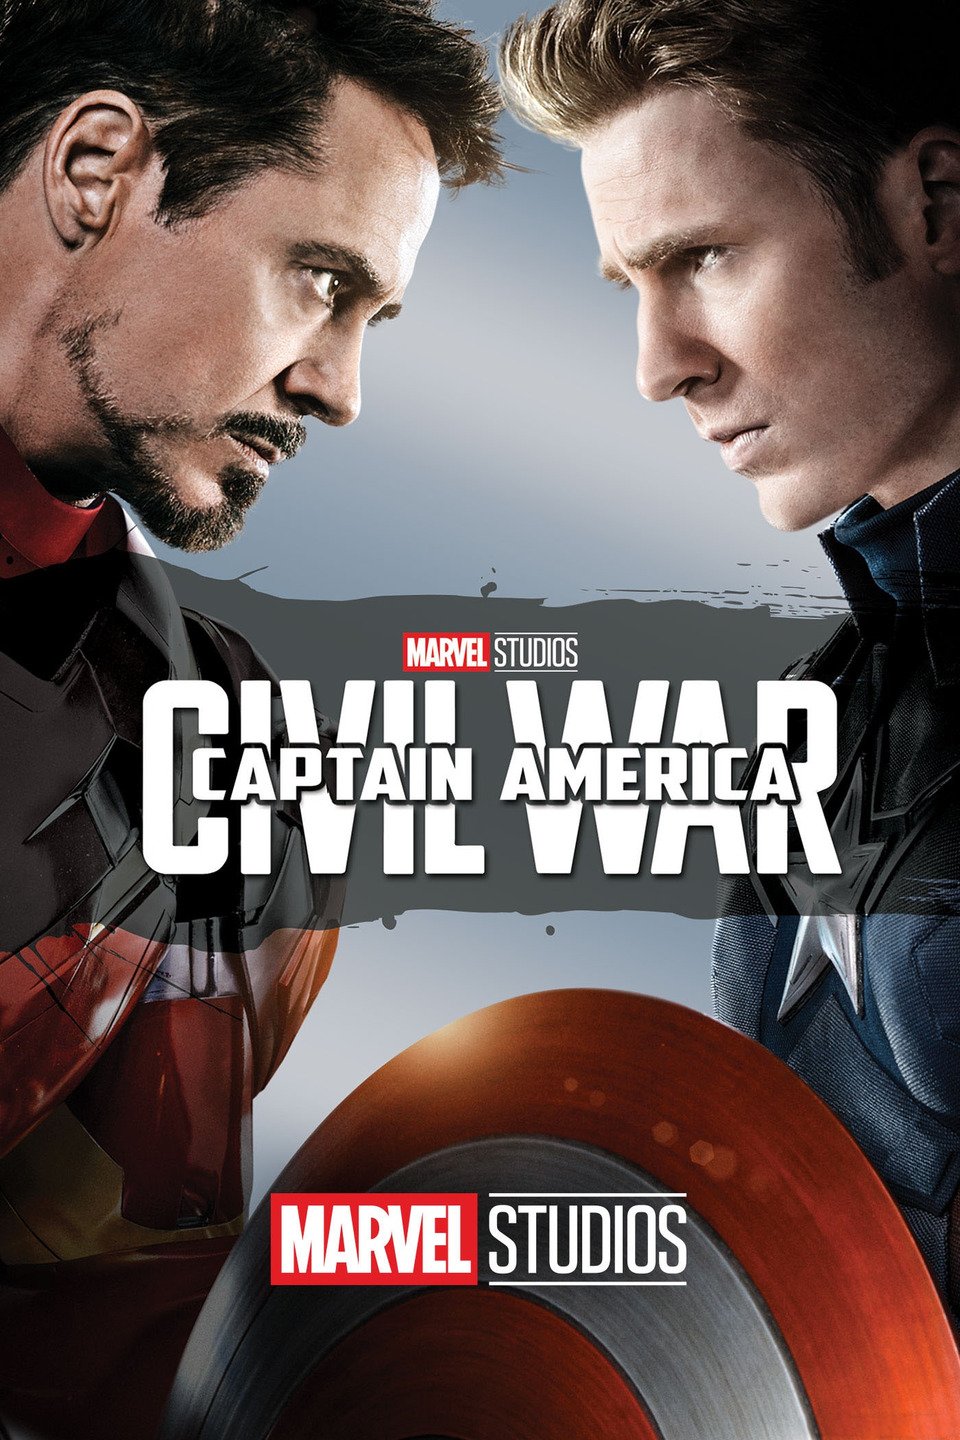 [MINI Super-HQ] Captain America: Civil War (2016) กัปตัน อเมริกา ศึกฮีโร่ระห่ำโลก [1080p] [พากย์ไทย 5.1 + อังกฤษ DTS] [บรรยายไทย + อังกฤษ] [เสียงไทย + ซับไทย] [ONE2UP]